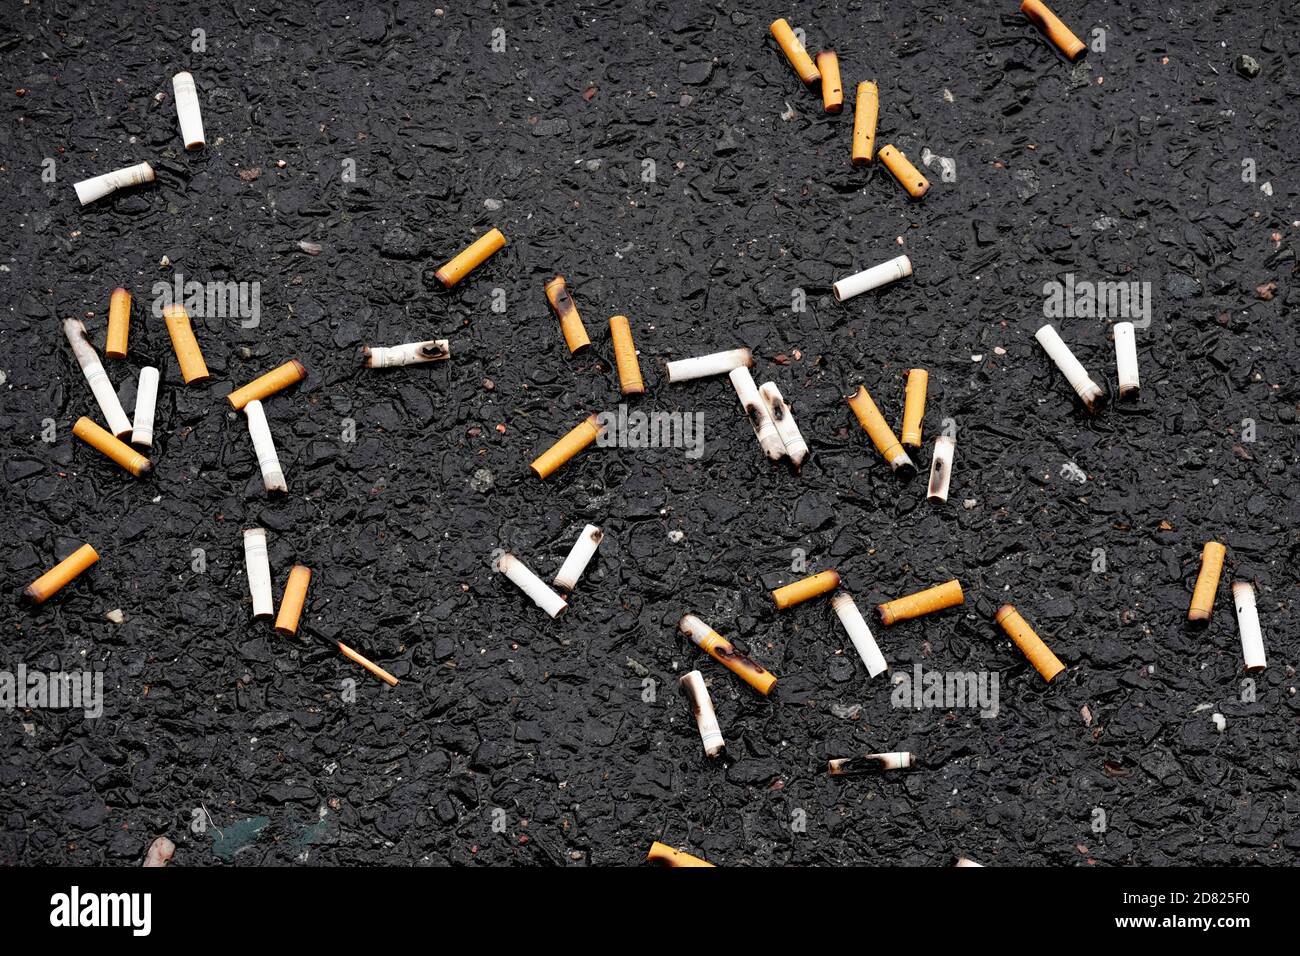 mozziconi di sigaretta gettati sulla strada Foto Stock